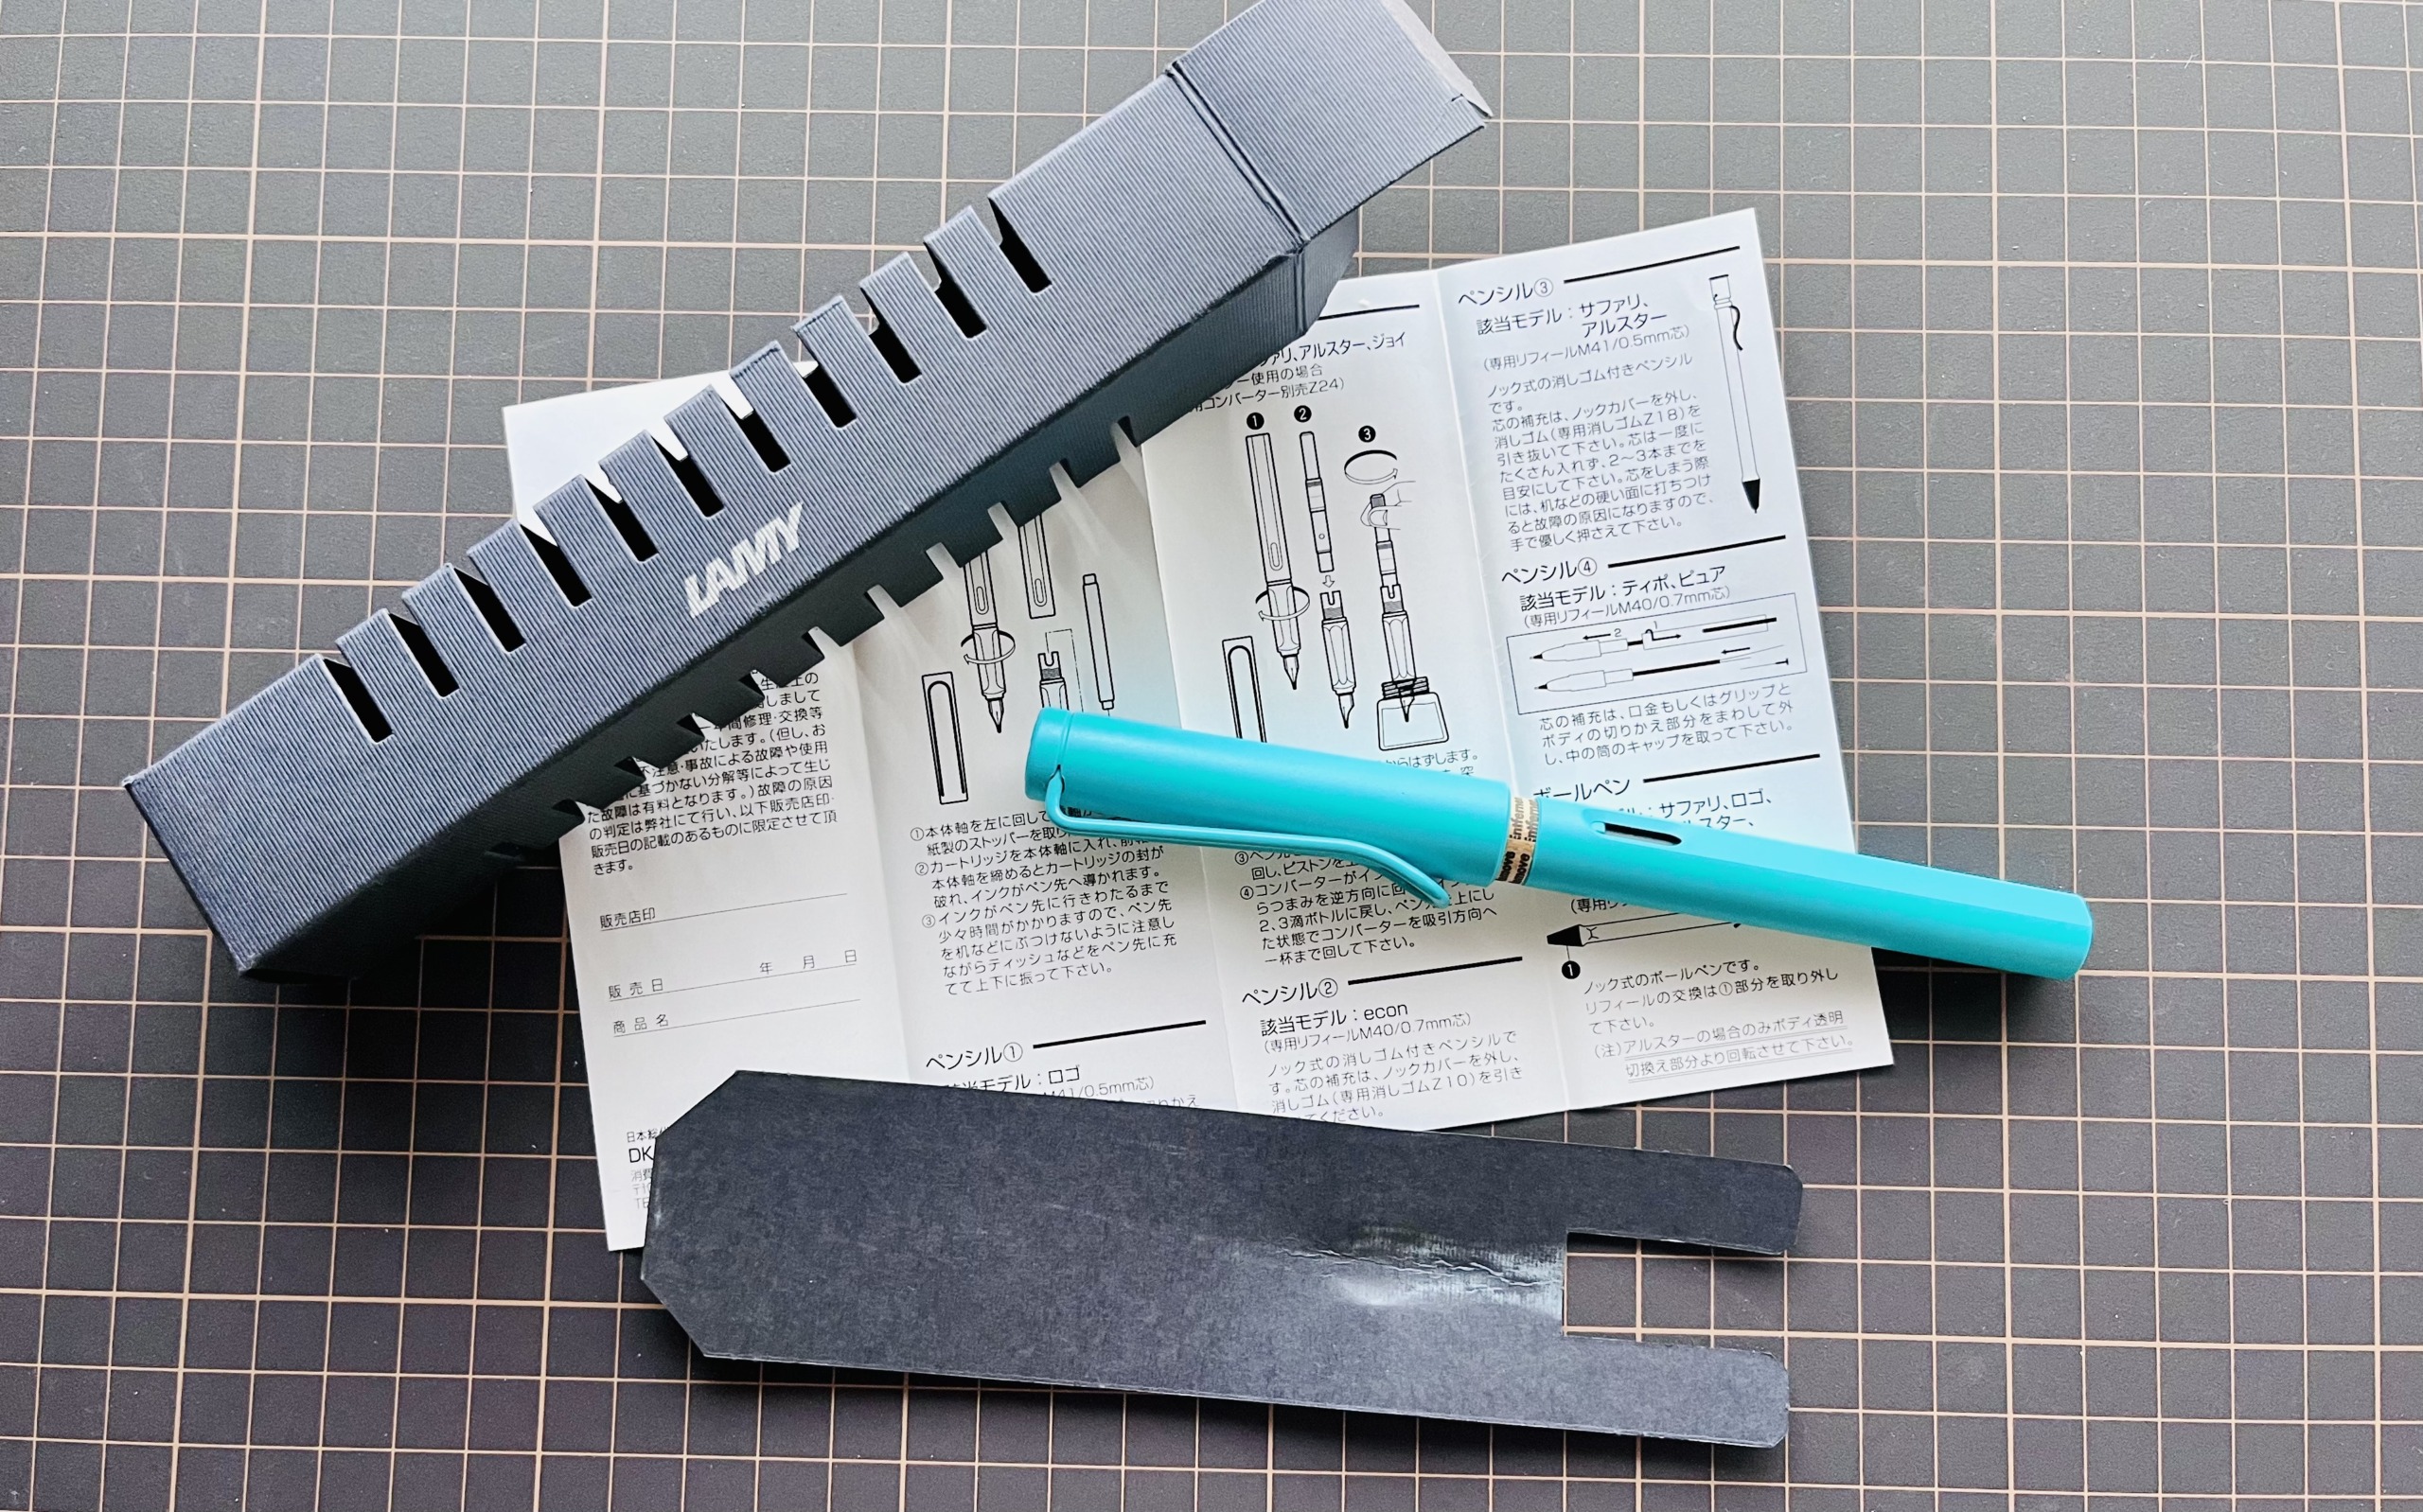 パッケージと説明書、下はペン本体を固定するためのストッパー。